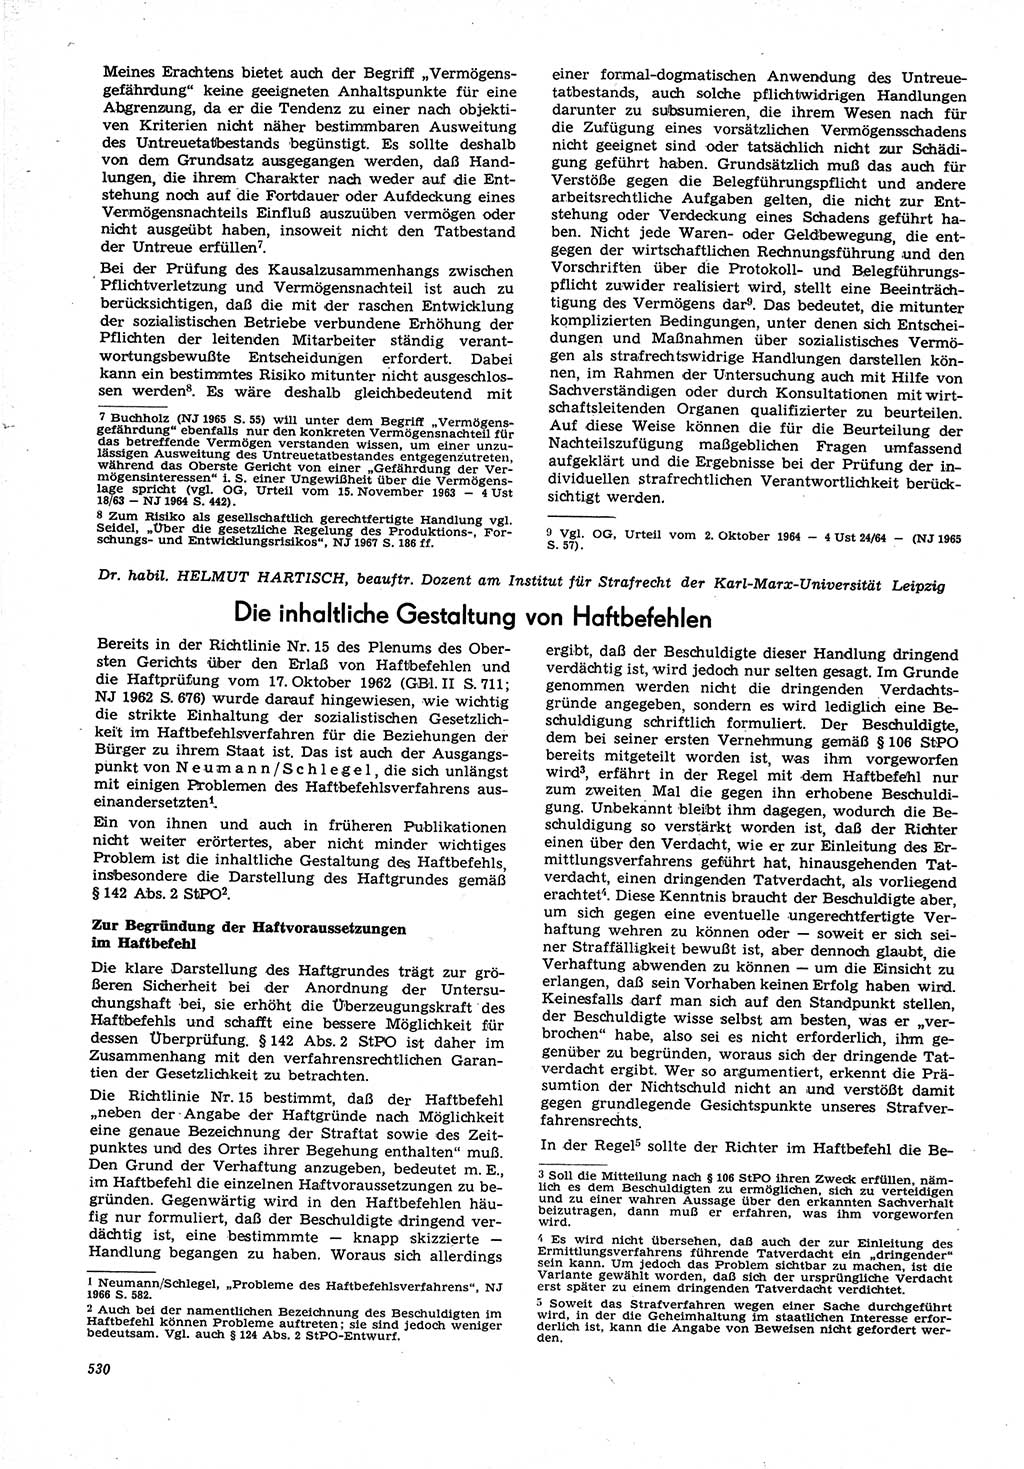 Neue Justiz (NJ), Zeitschrift für Recht und Rechtswissenschaft [Deutsche Demokratische Republik (DDR)], 21. Jahrgang 1967, Seite 530 (NJ DDR 1967, S. 530)